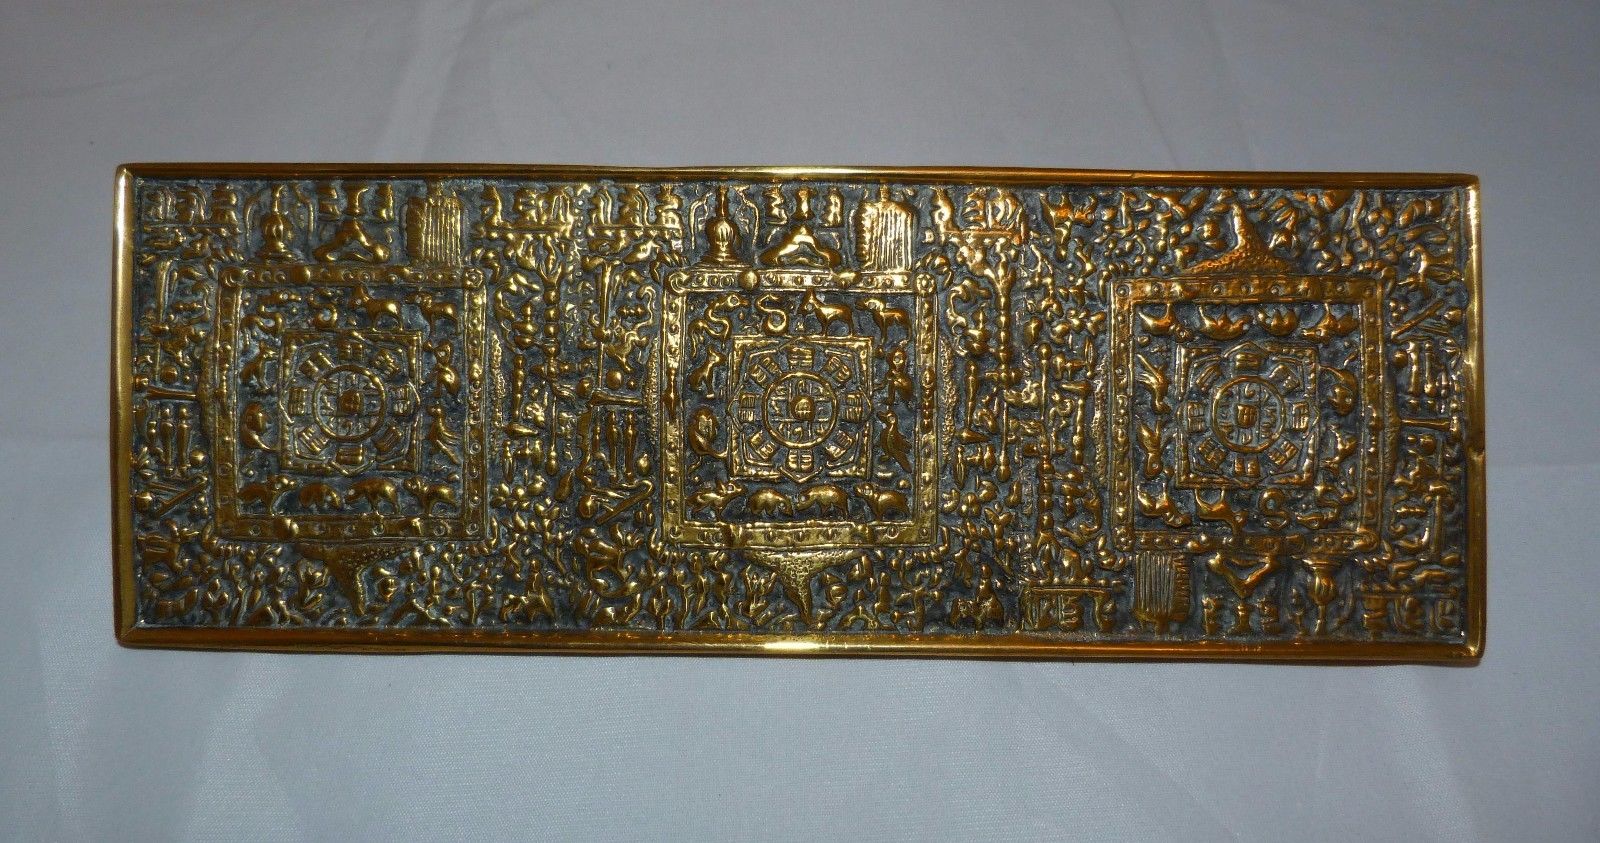 Antique/Vintage long ornate Brass Tibetan door handle, 9 3/8" x 3 3/8" (24x8cm)